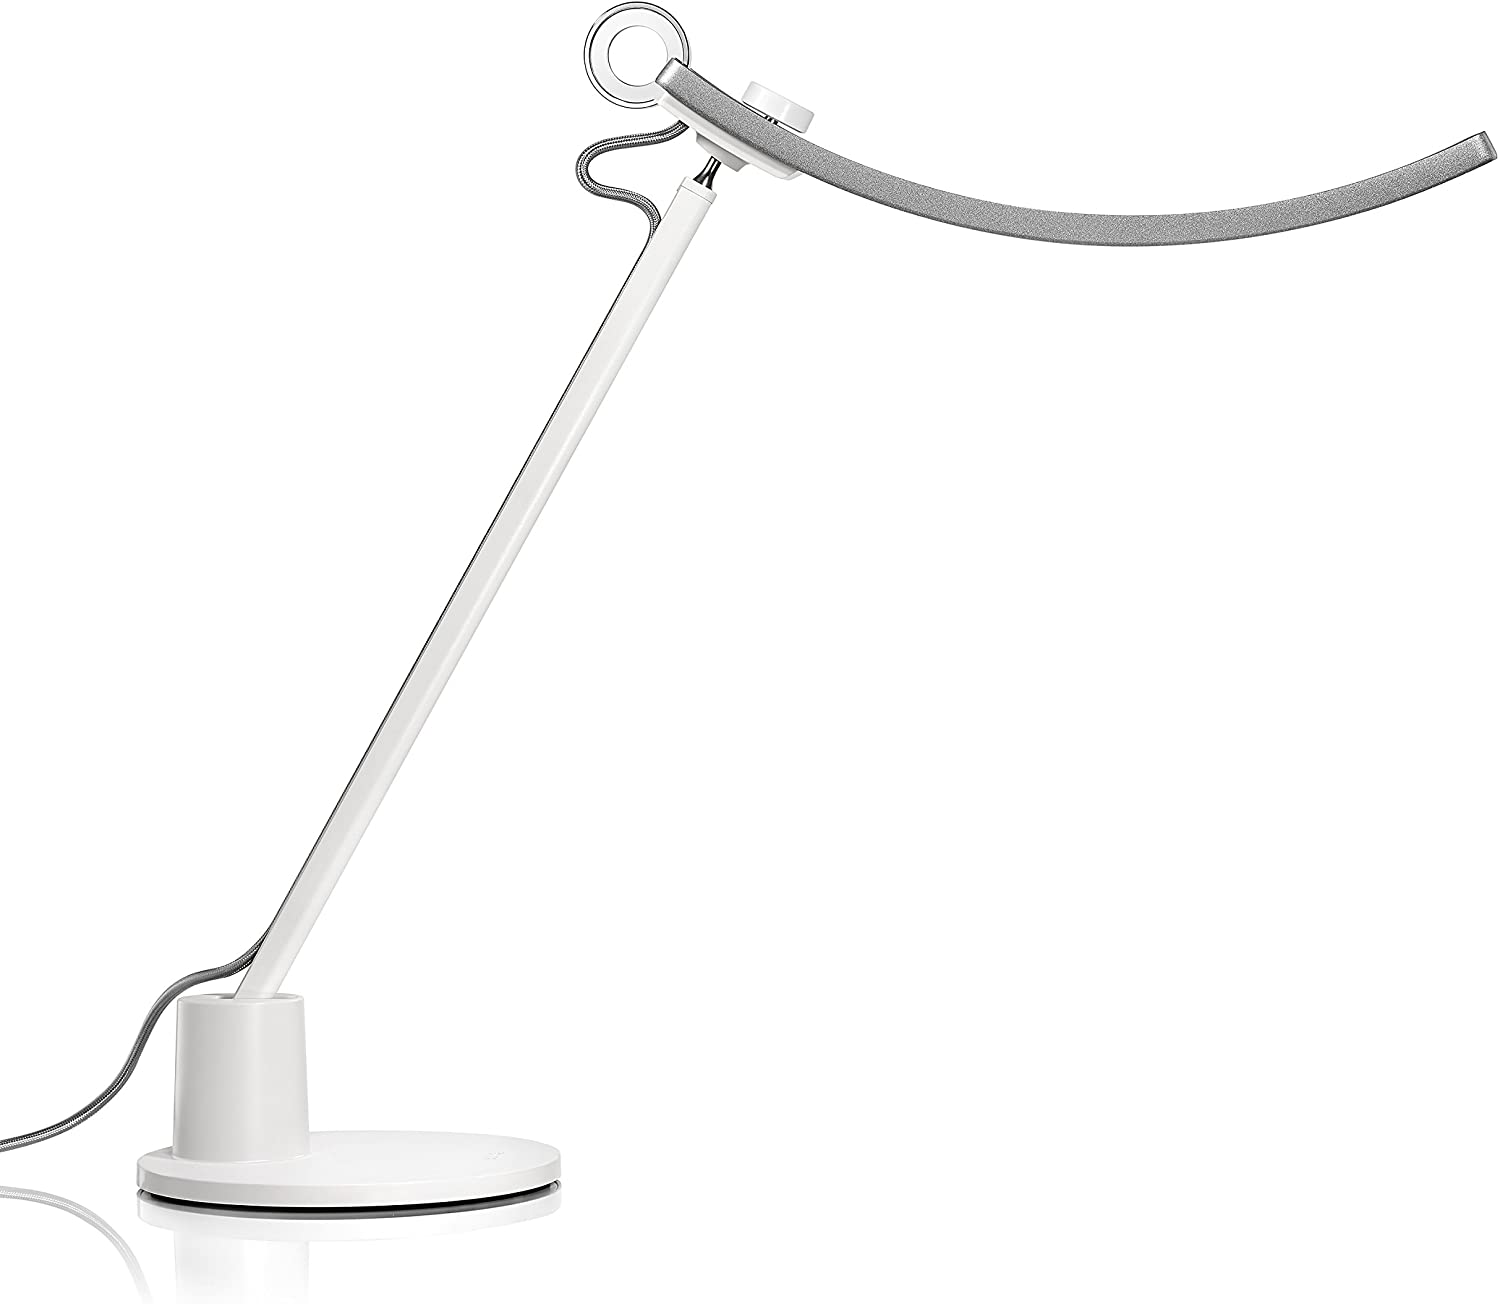 Overall Best Desk Lamp for Eyes: BenQ Silver Genie LED Desk Modern Eye-Caring Table Lamp